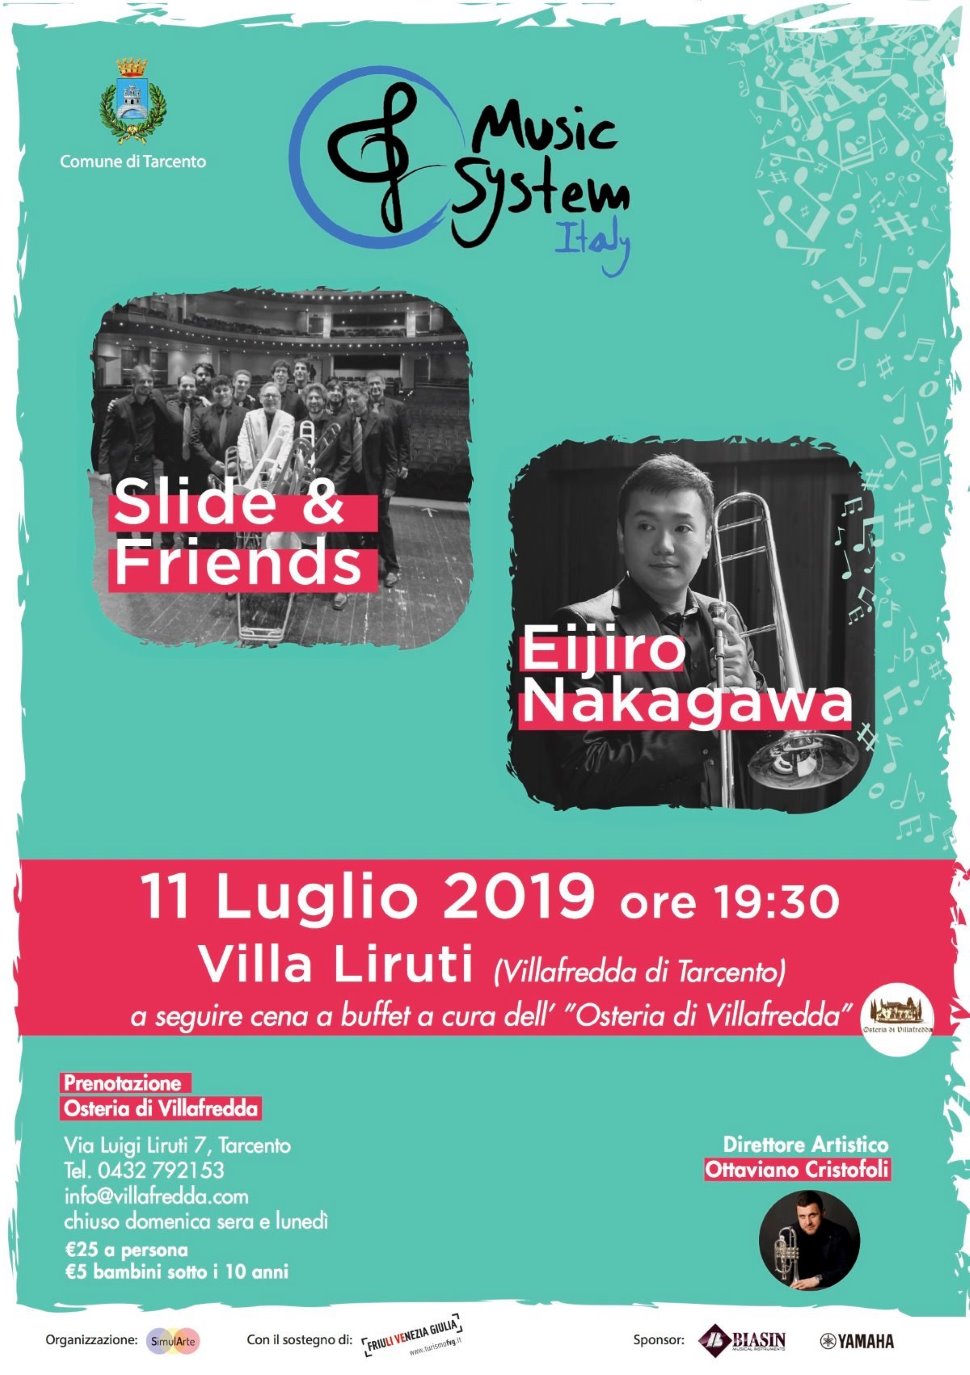 Eijiro Nakagawa e Slide & Friends in concerto a Villafredda di Tarcento